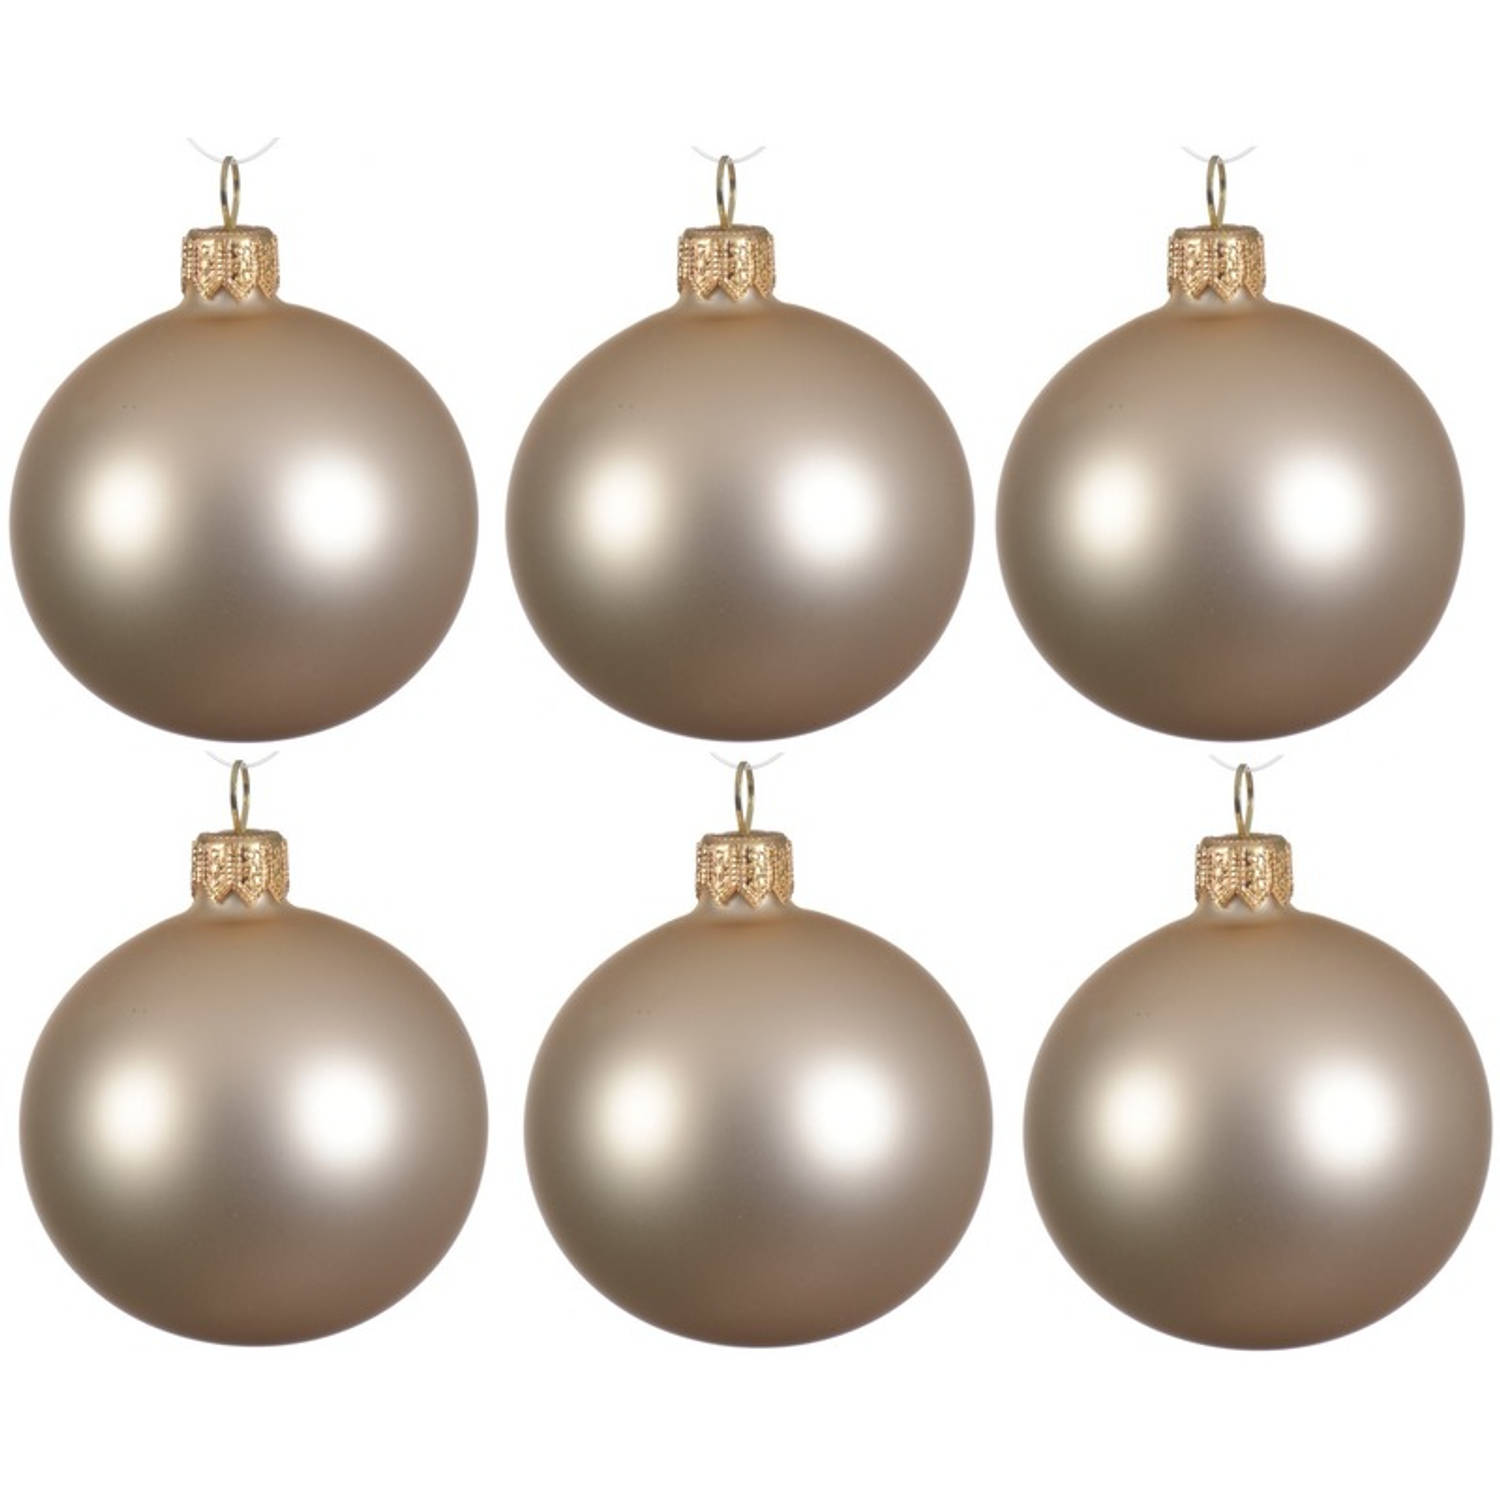 6x Glazen kerstballen mat licht parel/champagne 6 cm kerstboom versiering/decoratie - Kerstbal